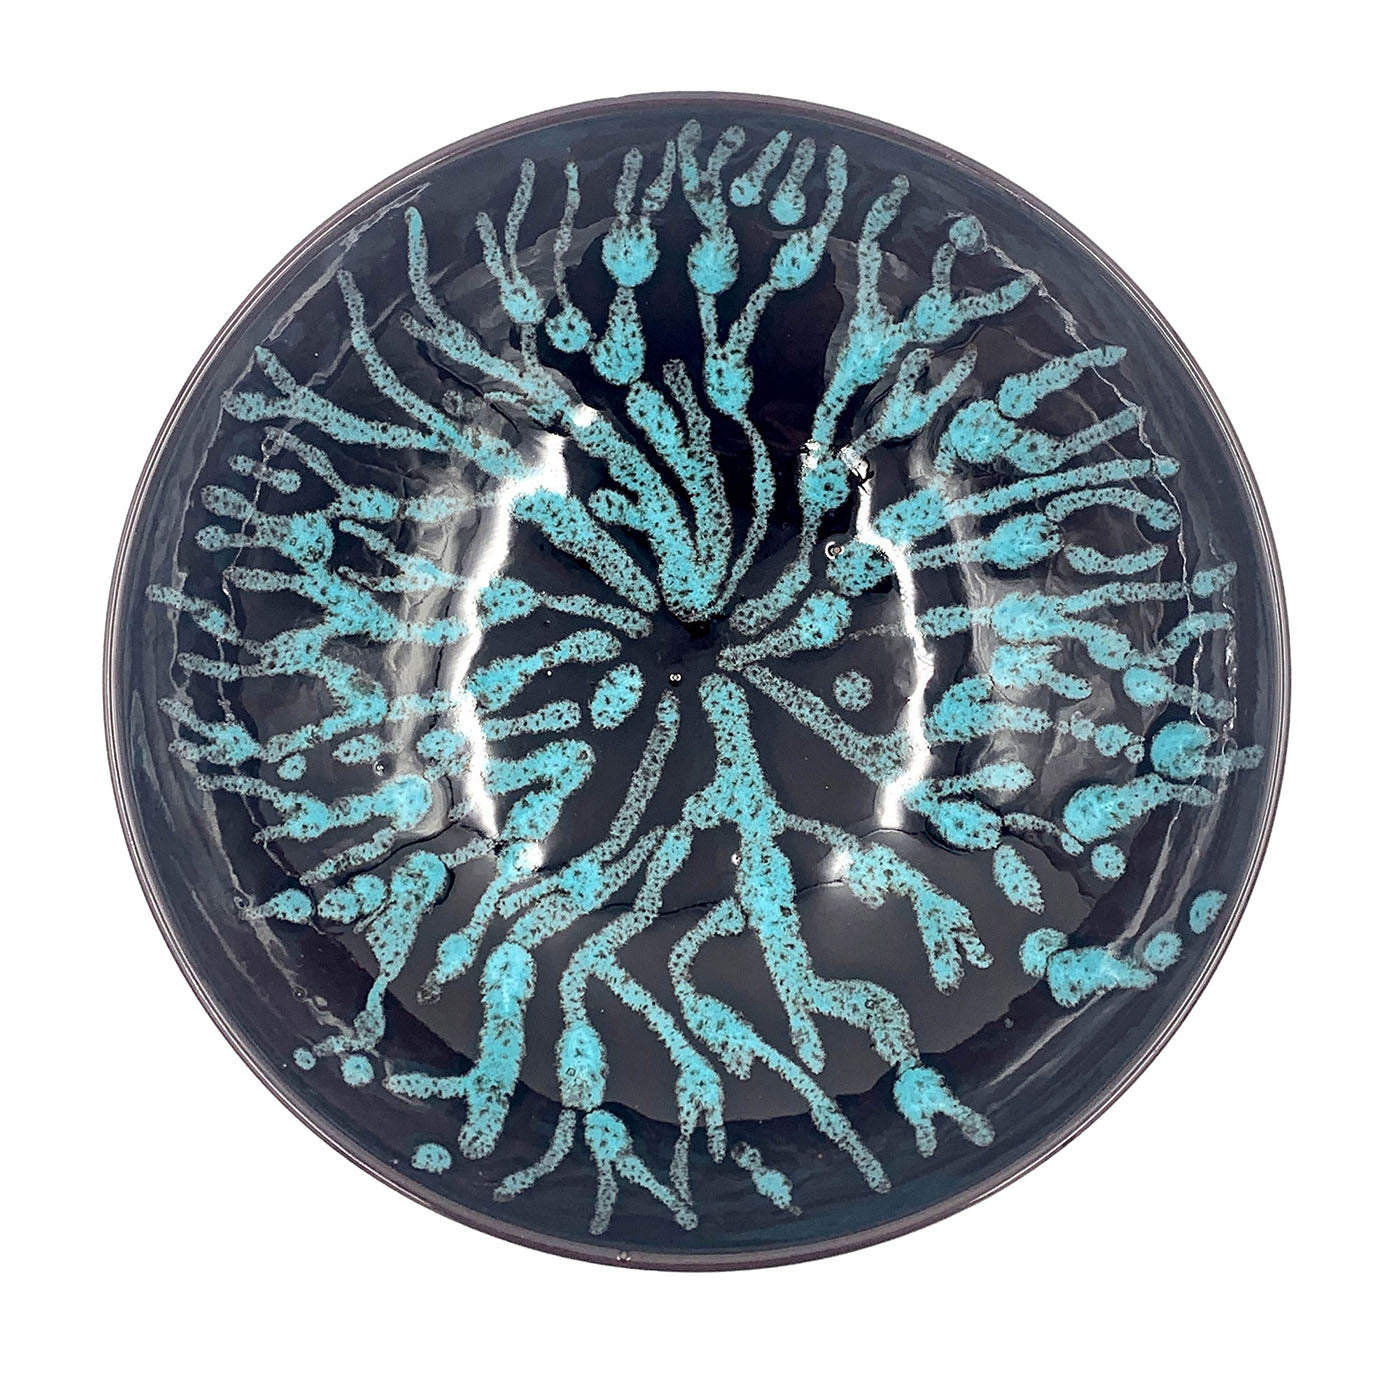 Corallo Blu Ceramic Centerpiece - Main view